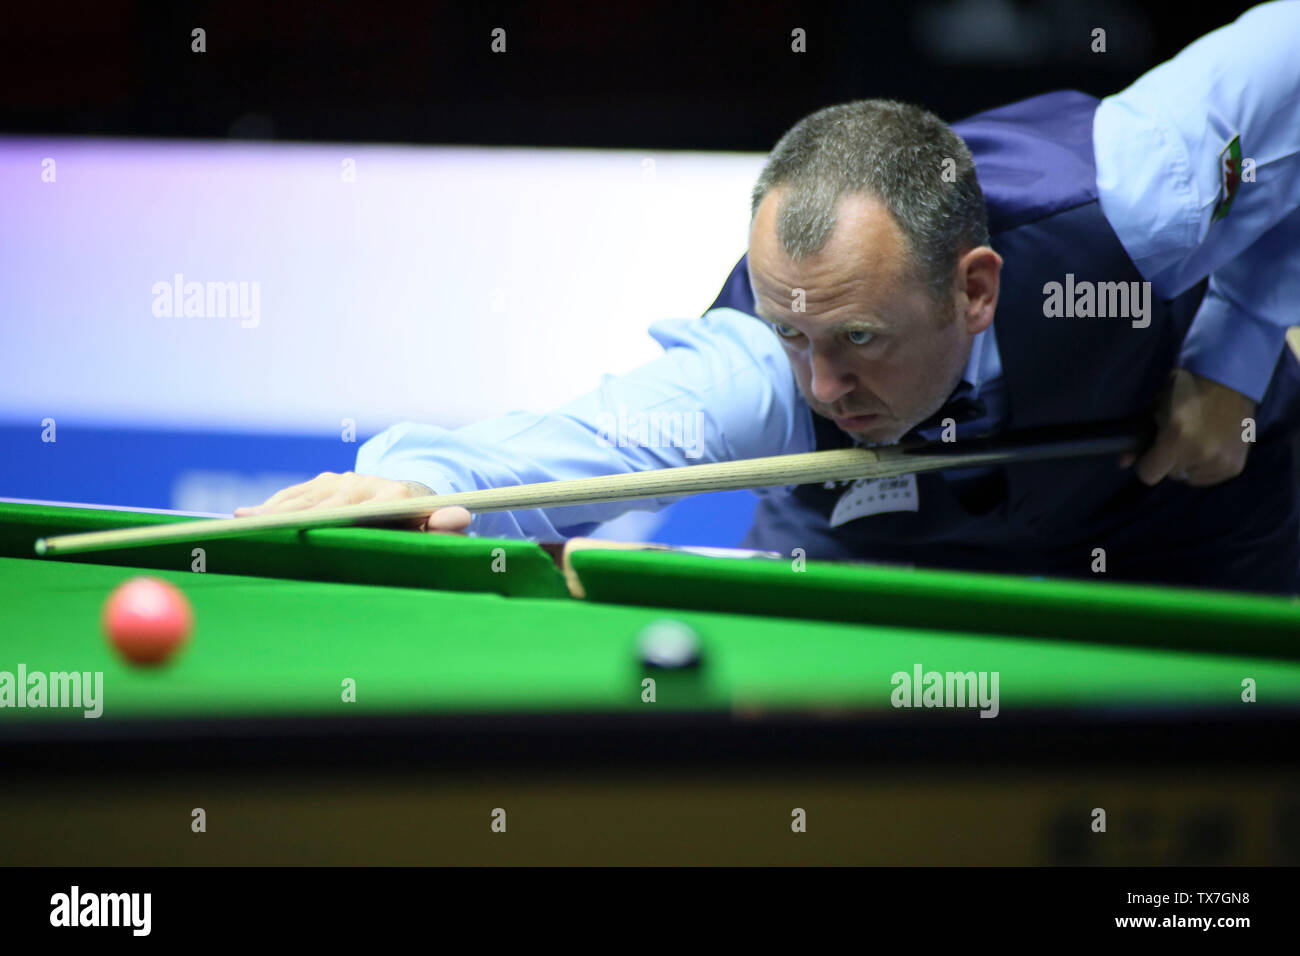 Mark Williams von Wales gibt einen Schuß zu Indien in der Gruppe D Match während der Beverly 2019 Snooker Wm in Wuxi City, der ostchinesischen Provinz Jiangsu, 24. Juni 2019. Wales besiegte Indien 4-0. Stockfoto